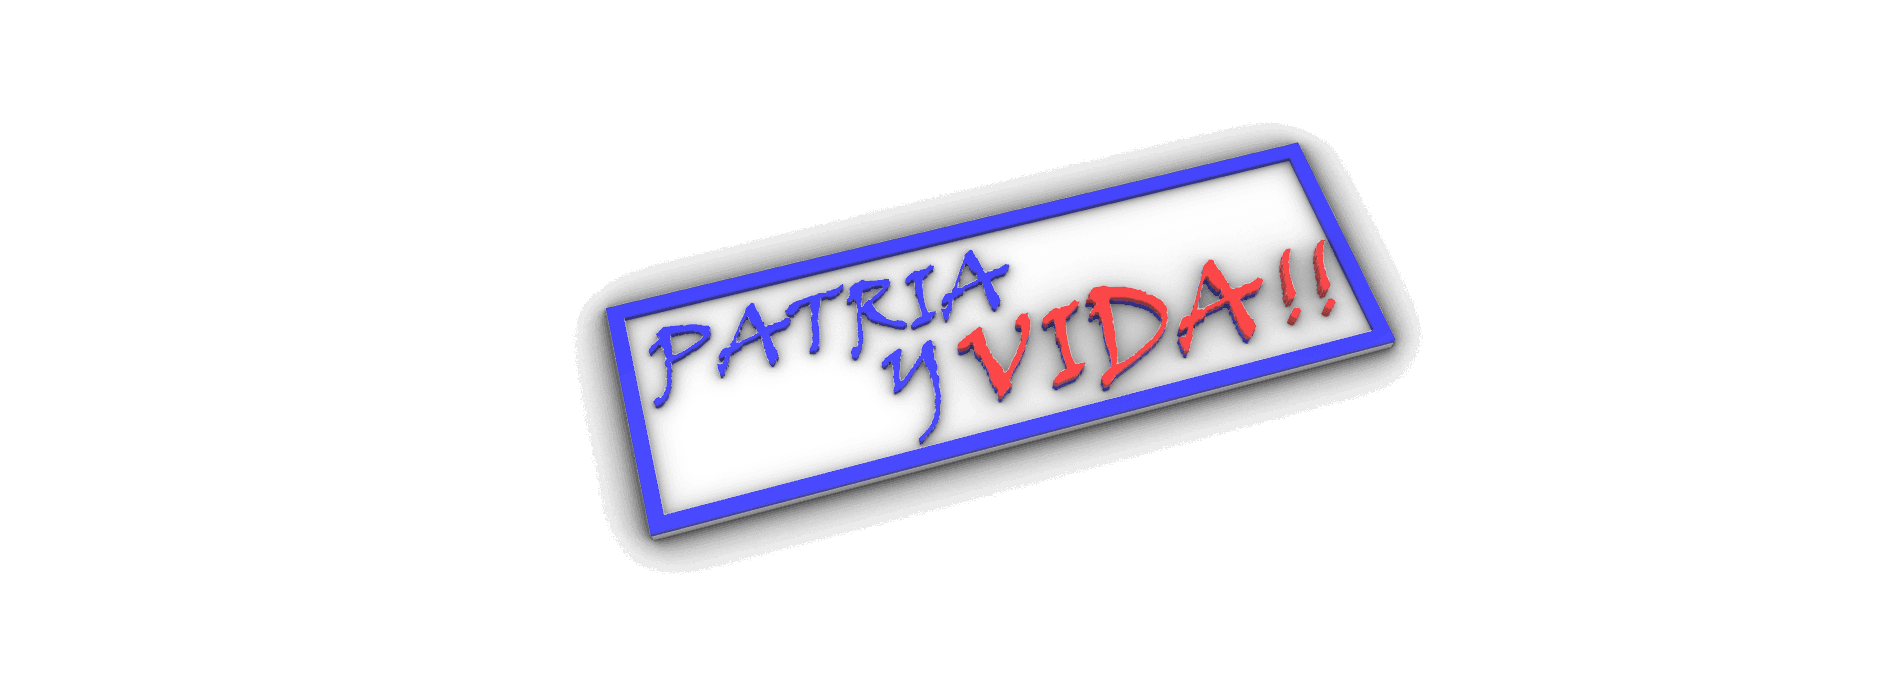 PATRIA Y VIDA.stl 3d model